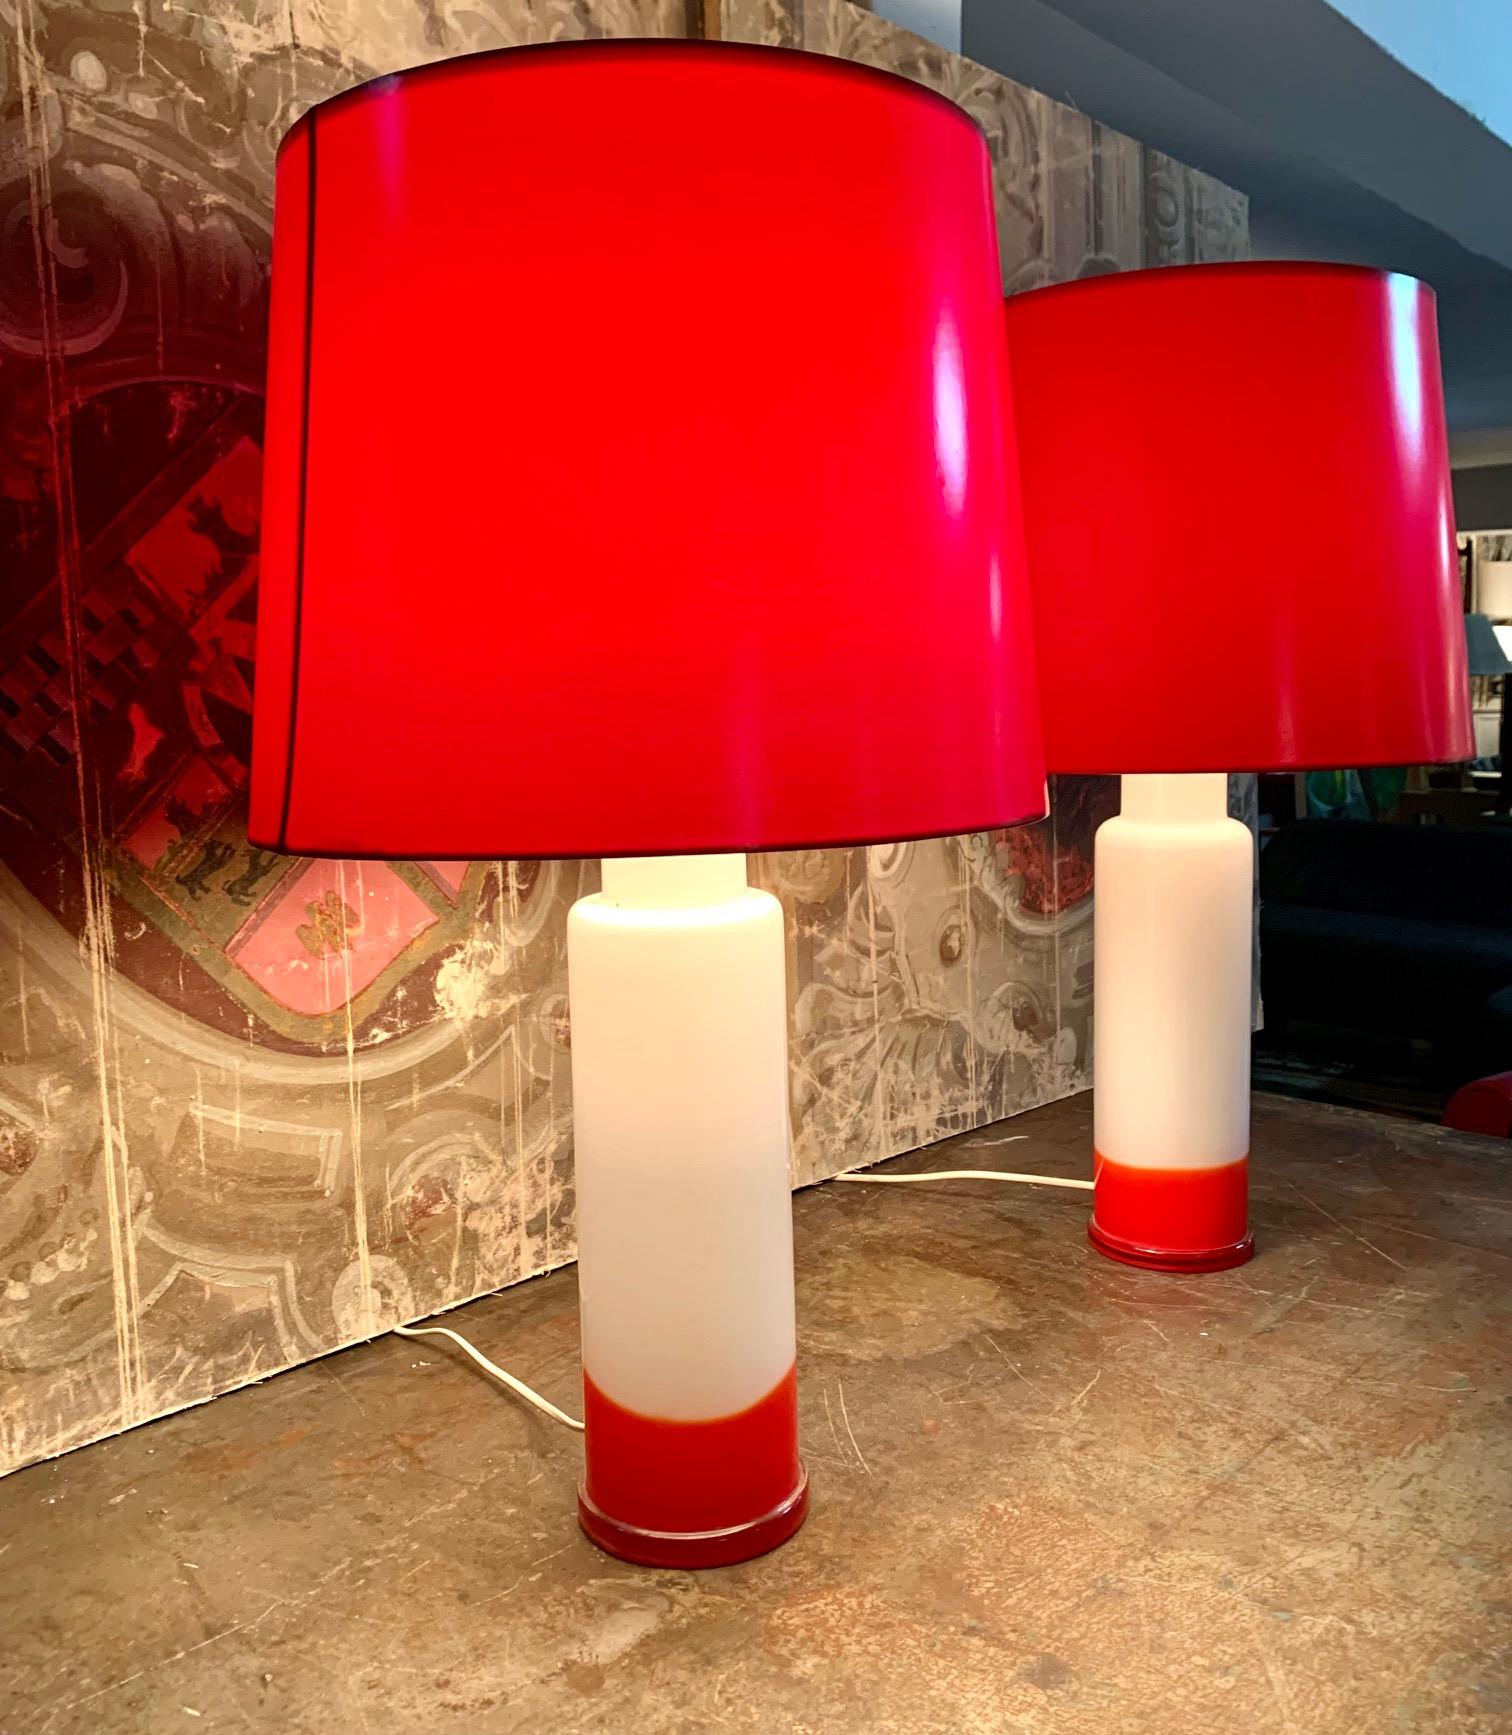 Paire de lampes de table suédoises modernes en verre qpaque blanc et rouge, Les lampes combinent la couleur blanche et rouge dans la colonne centrale et les abat-jour sont en plexiglas rouge. Câblé pour les États-Unis.